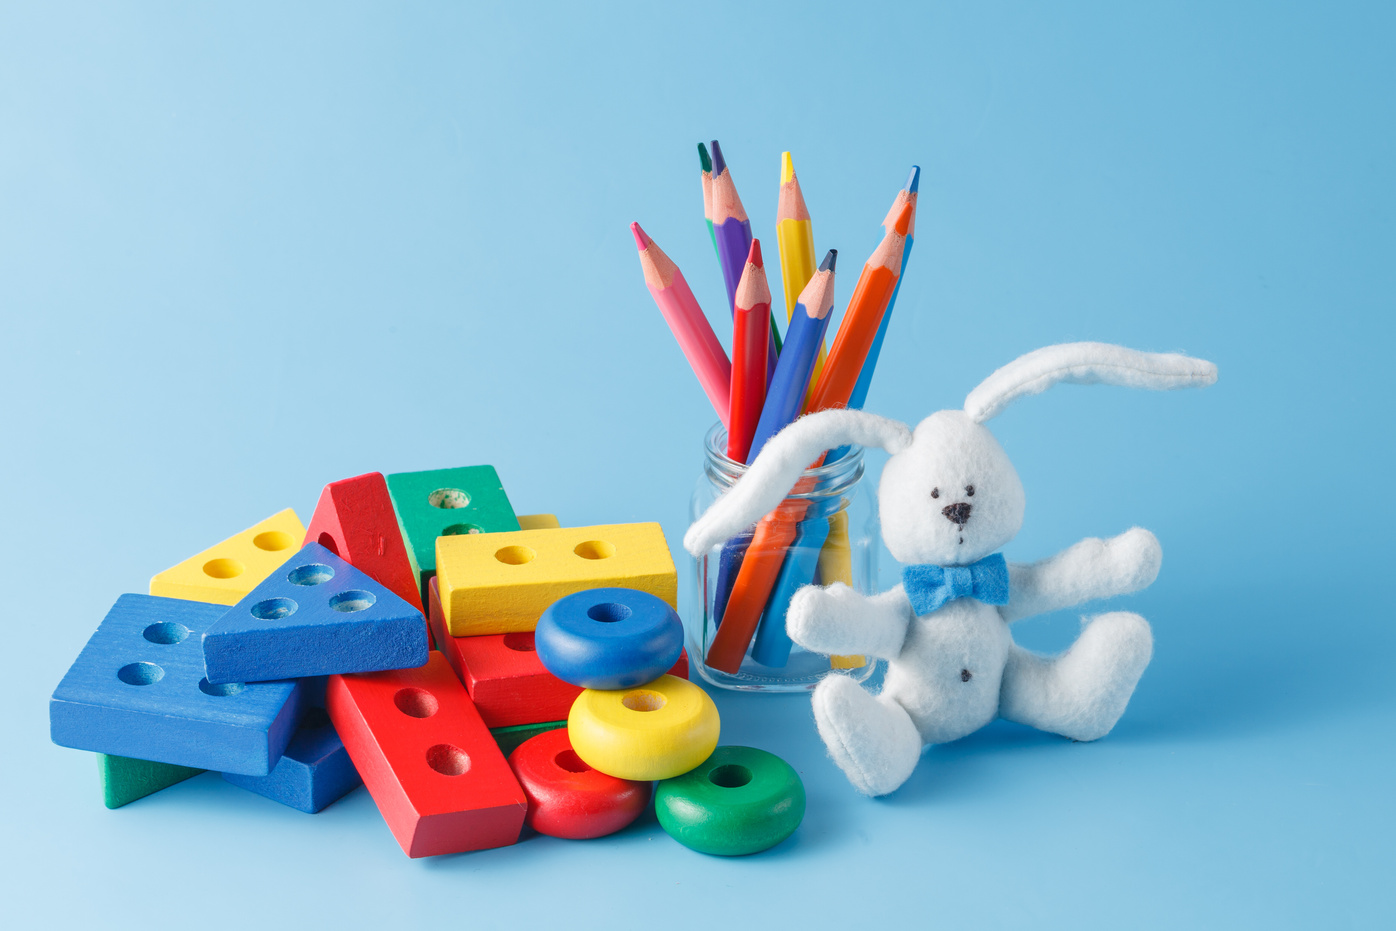 children toys for learning for skills